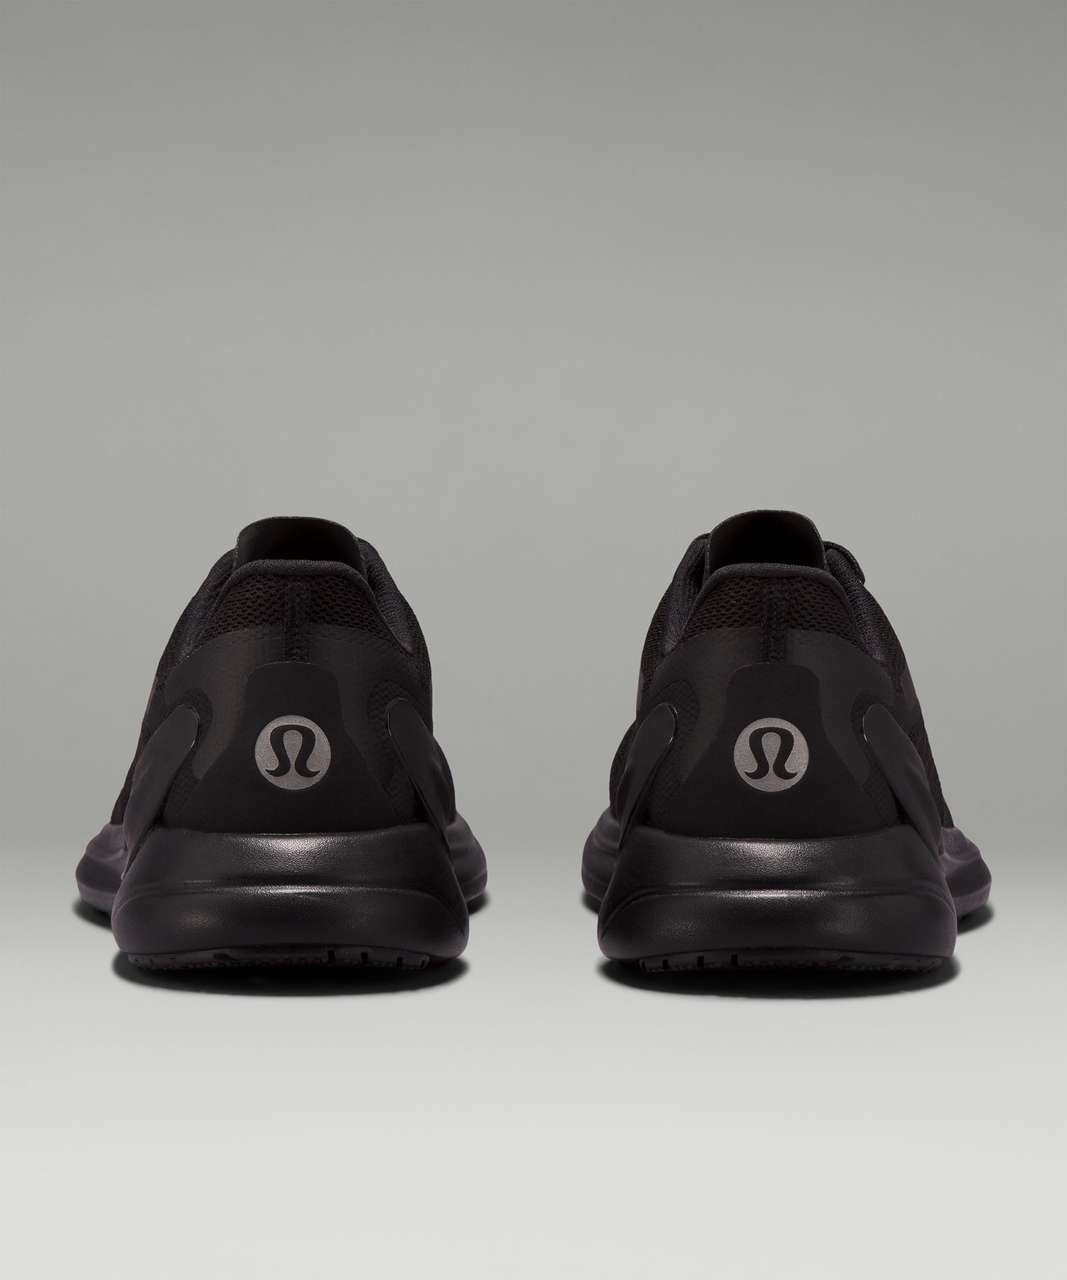 Lululemon Blissfeel 2 Womens Running Shoe - Black / Black / Asphalt Grey